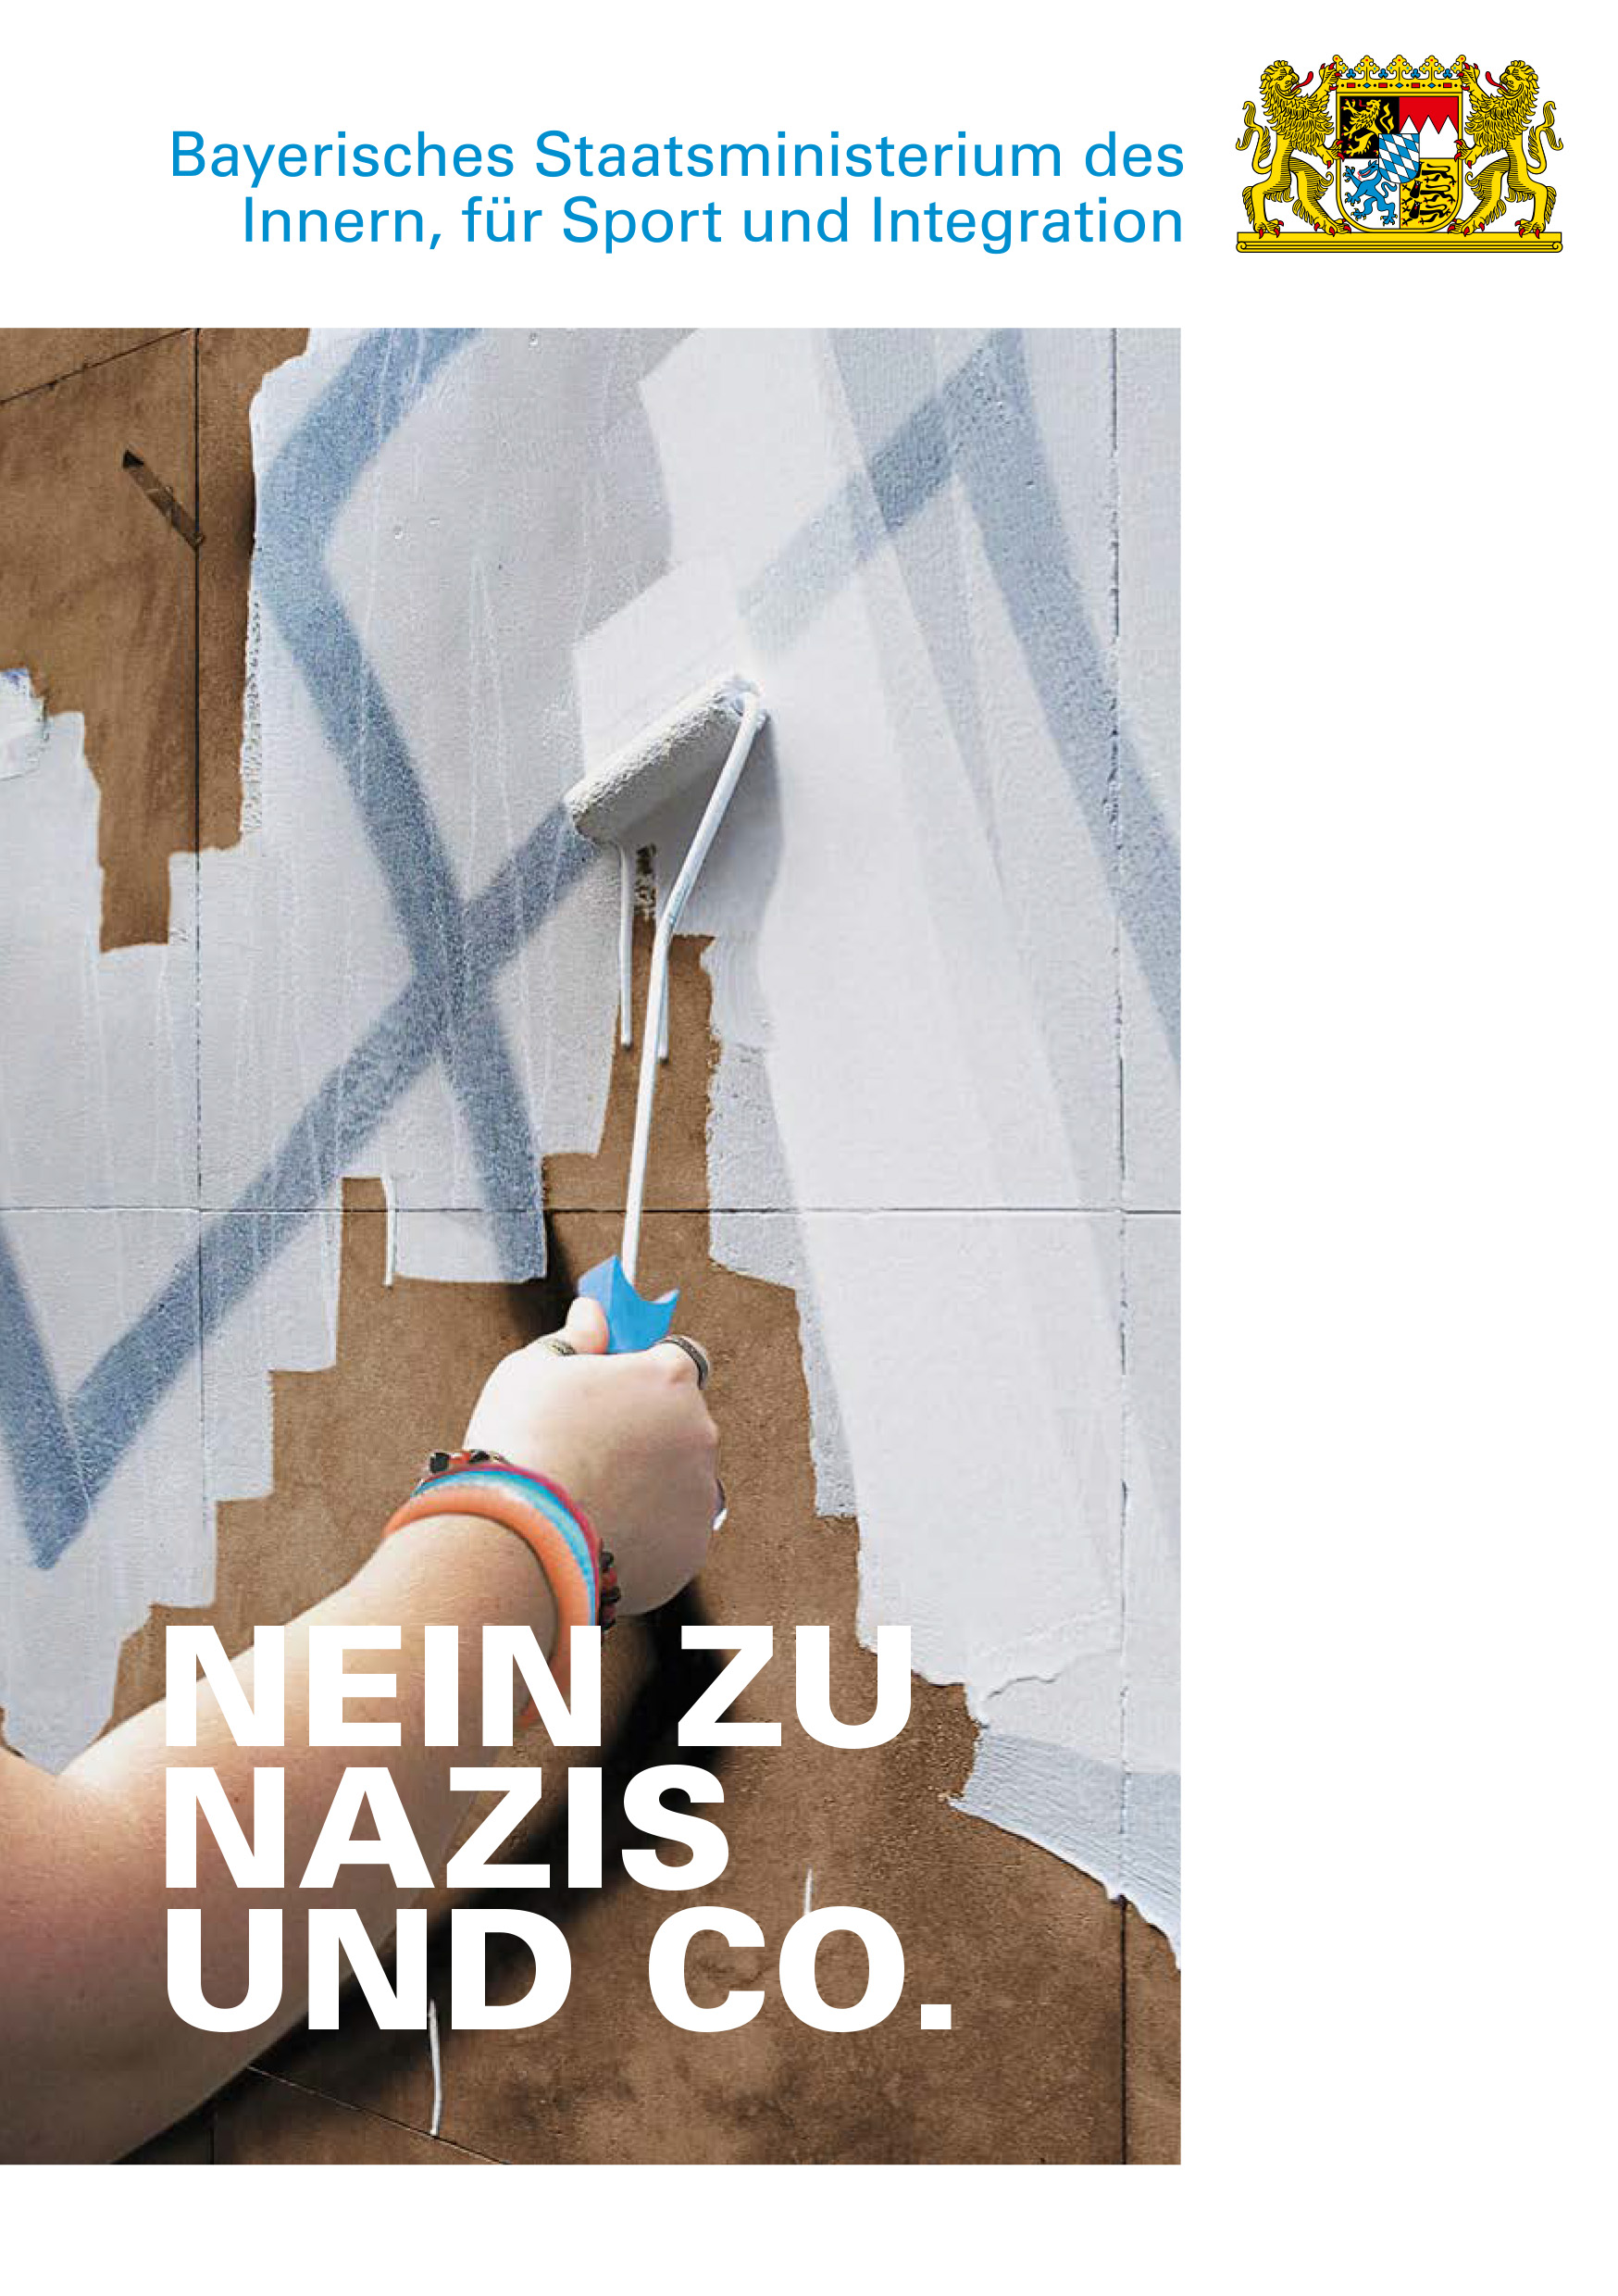 Cover zur Broschüre "Nein zu Nazis und Co."